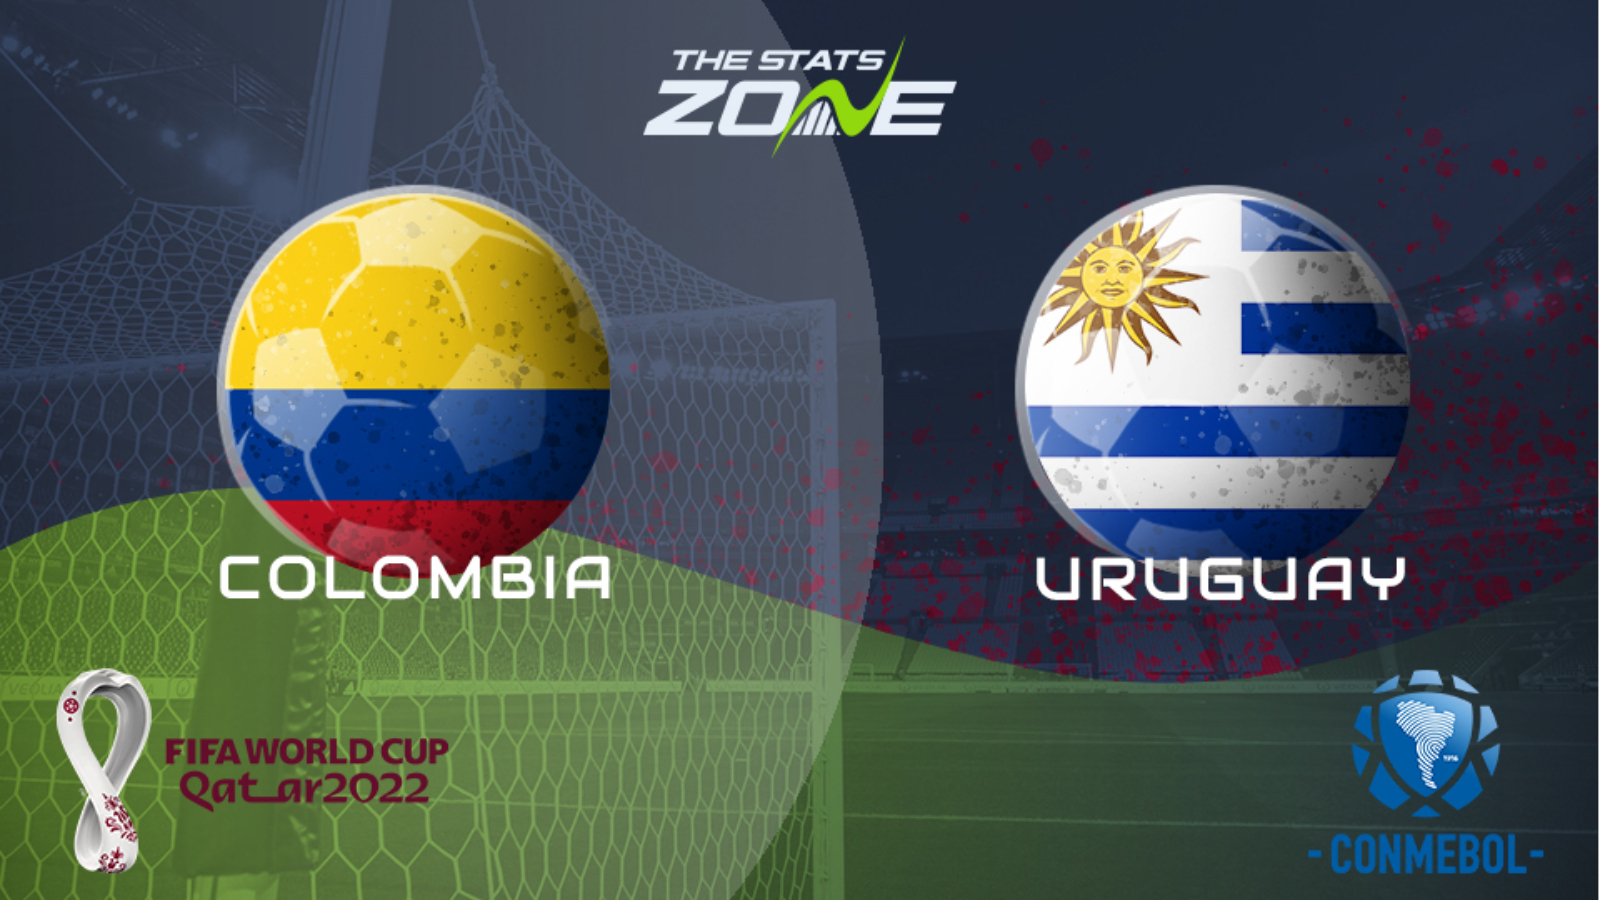 Uruguay Vs Colombia - Round Of 16 Colombia Vs Uruguay The 2014 World